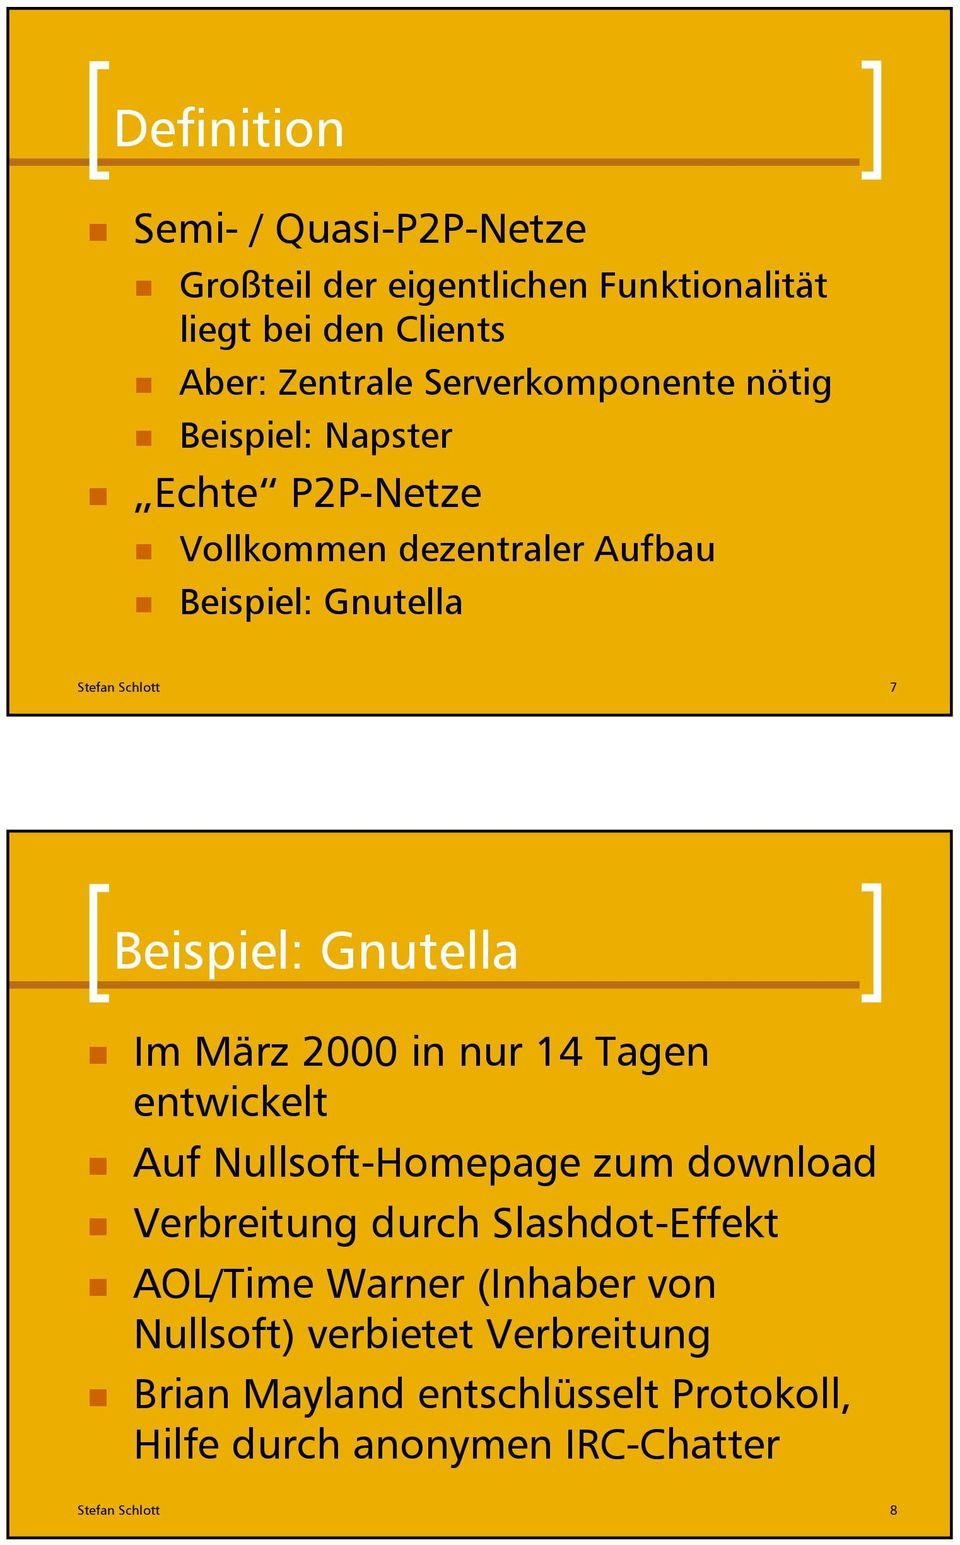 Beispiel: Gnutella Im März 2000 in nur 14 Tagen entwickelt Auf Nullsoft-Homepage zum download Verbreitung durch Slashdot-Effekt